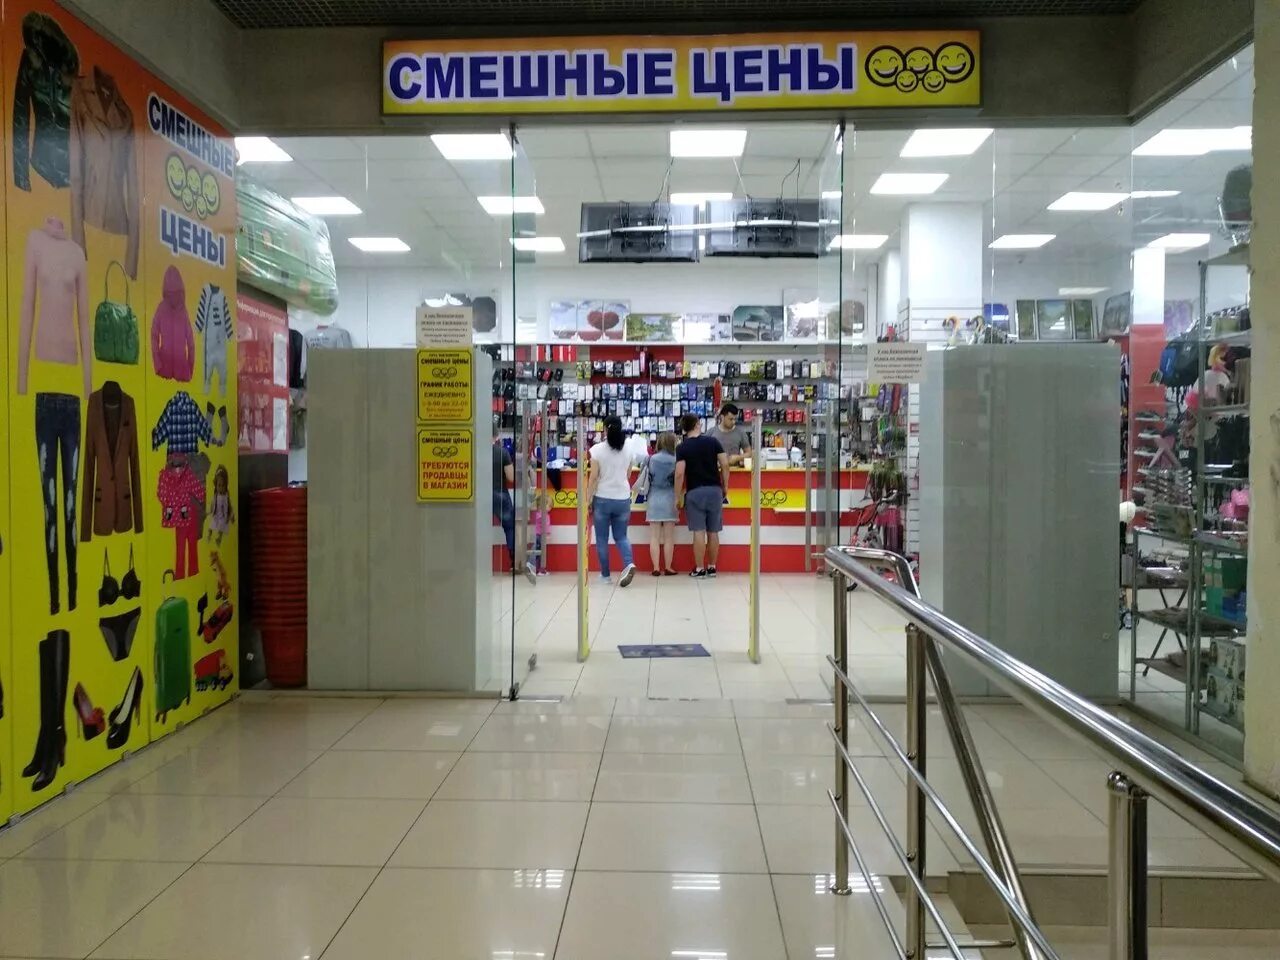 Смешные цены в москве рядом со мной. Смешные цены. Смешные магазины. Магазин смешные цены. Смешные магазины в Москве.